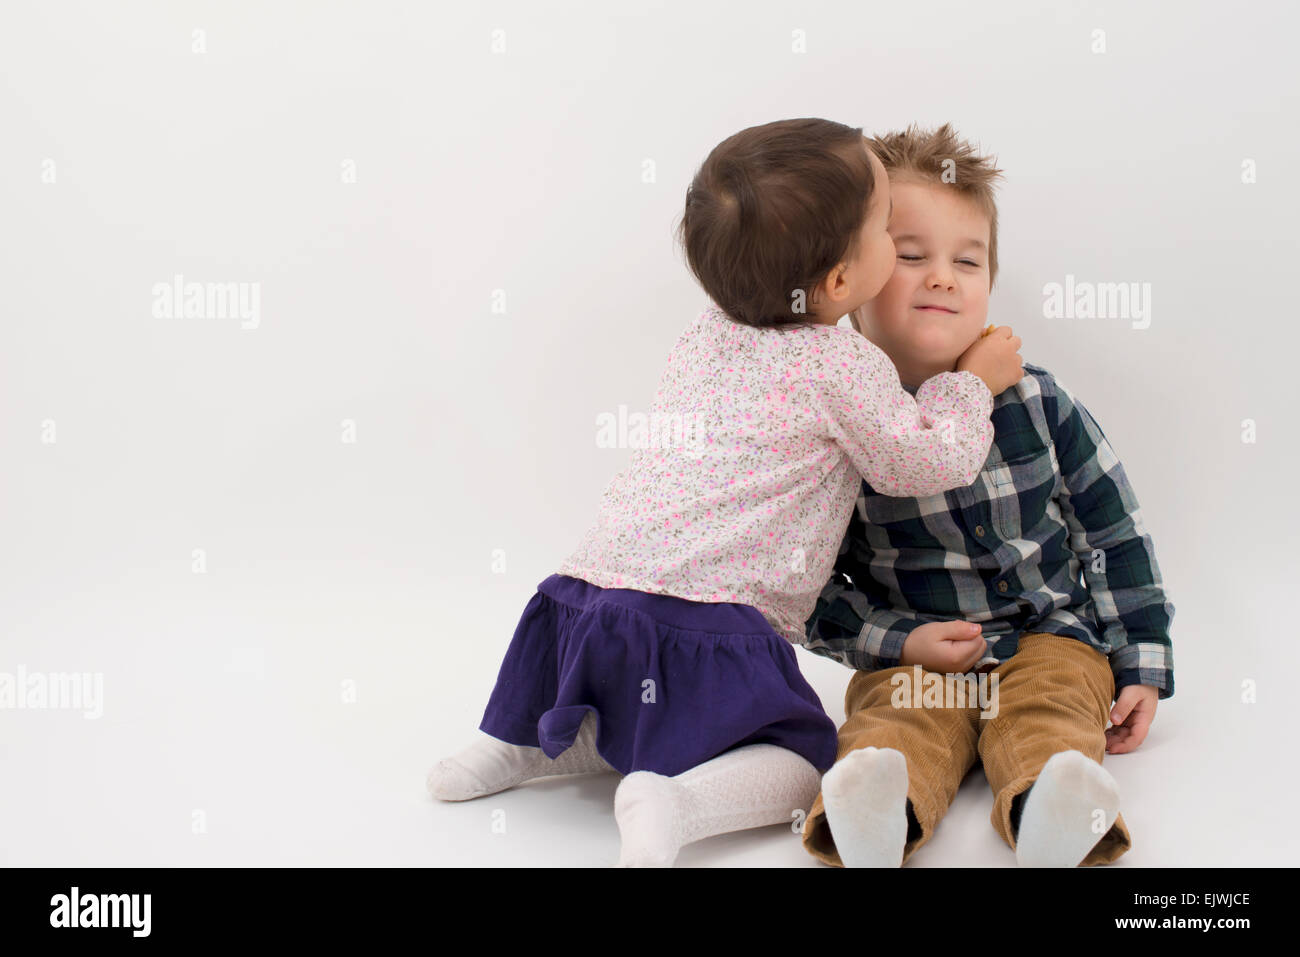 kleines Mädchen küssen ihr älteren Bruder auf die Wange, isoliert Stockfoto